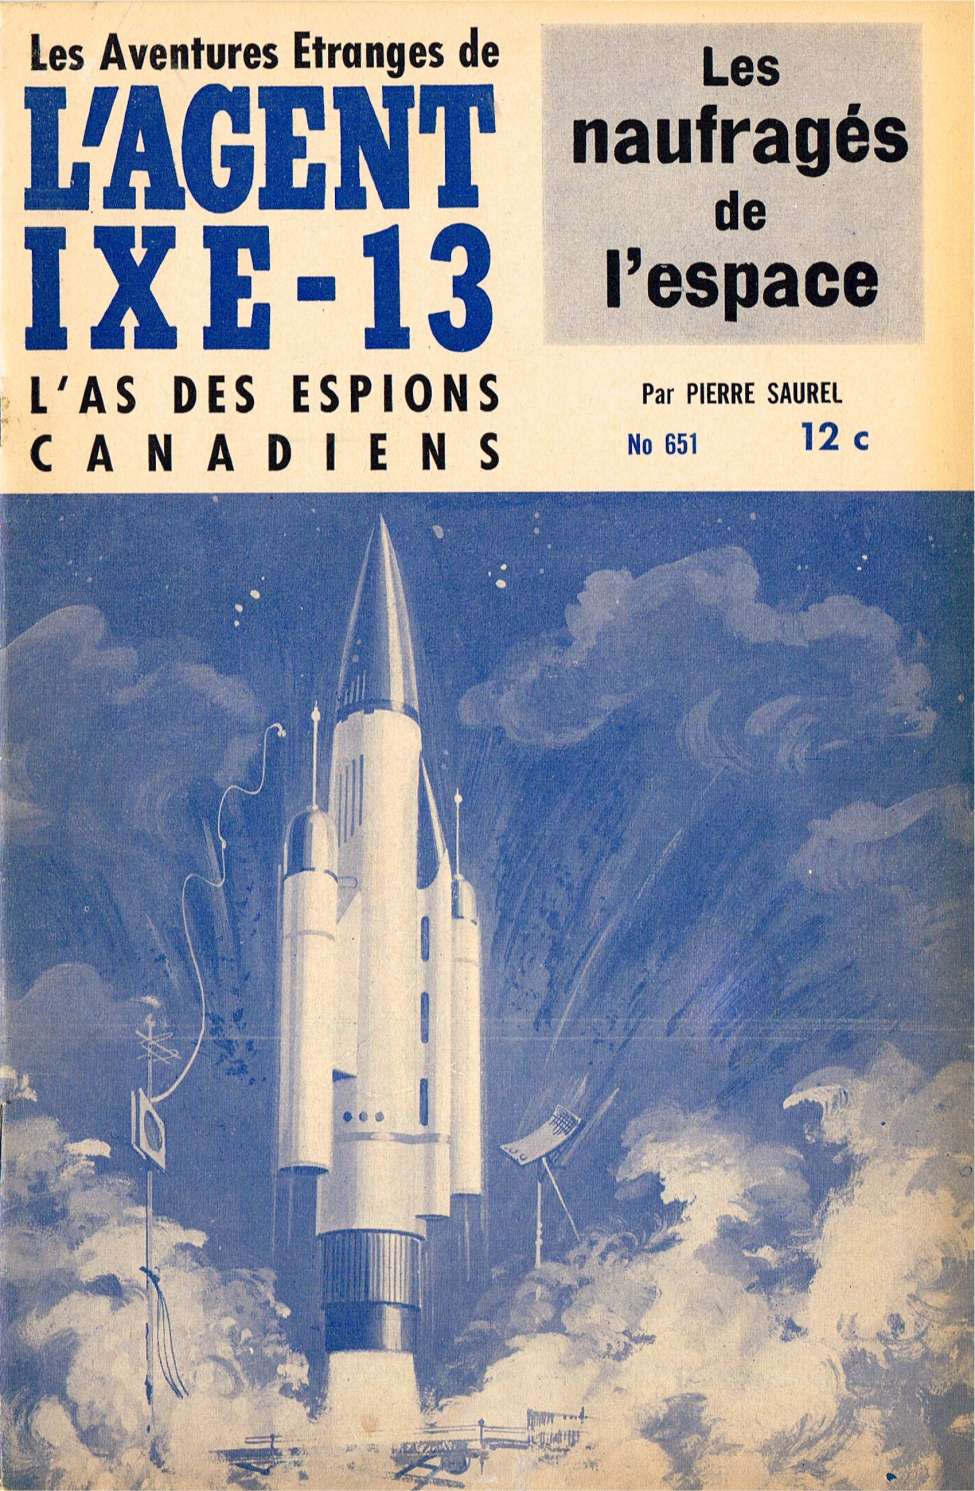 Book Cover For L'Agent IXE-13 v2 651 - Les naufragés de l'espace